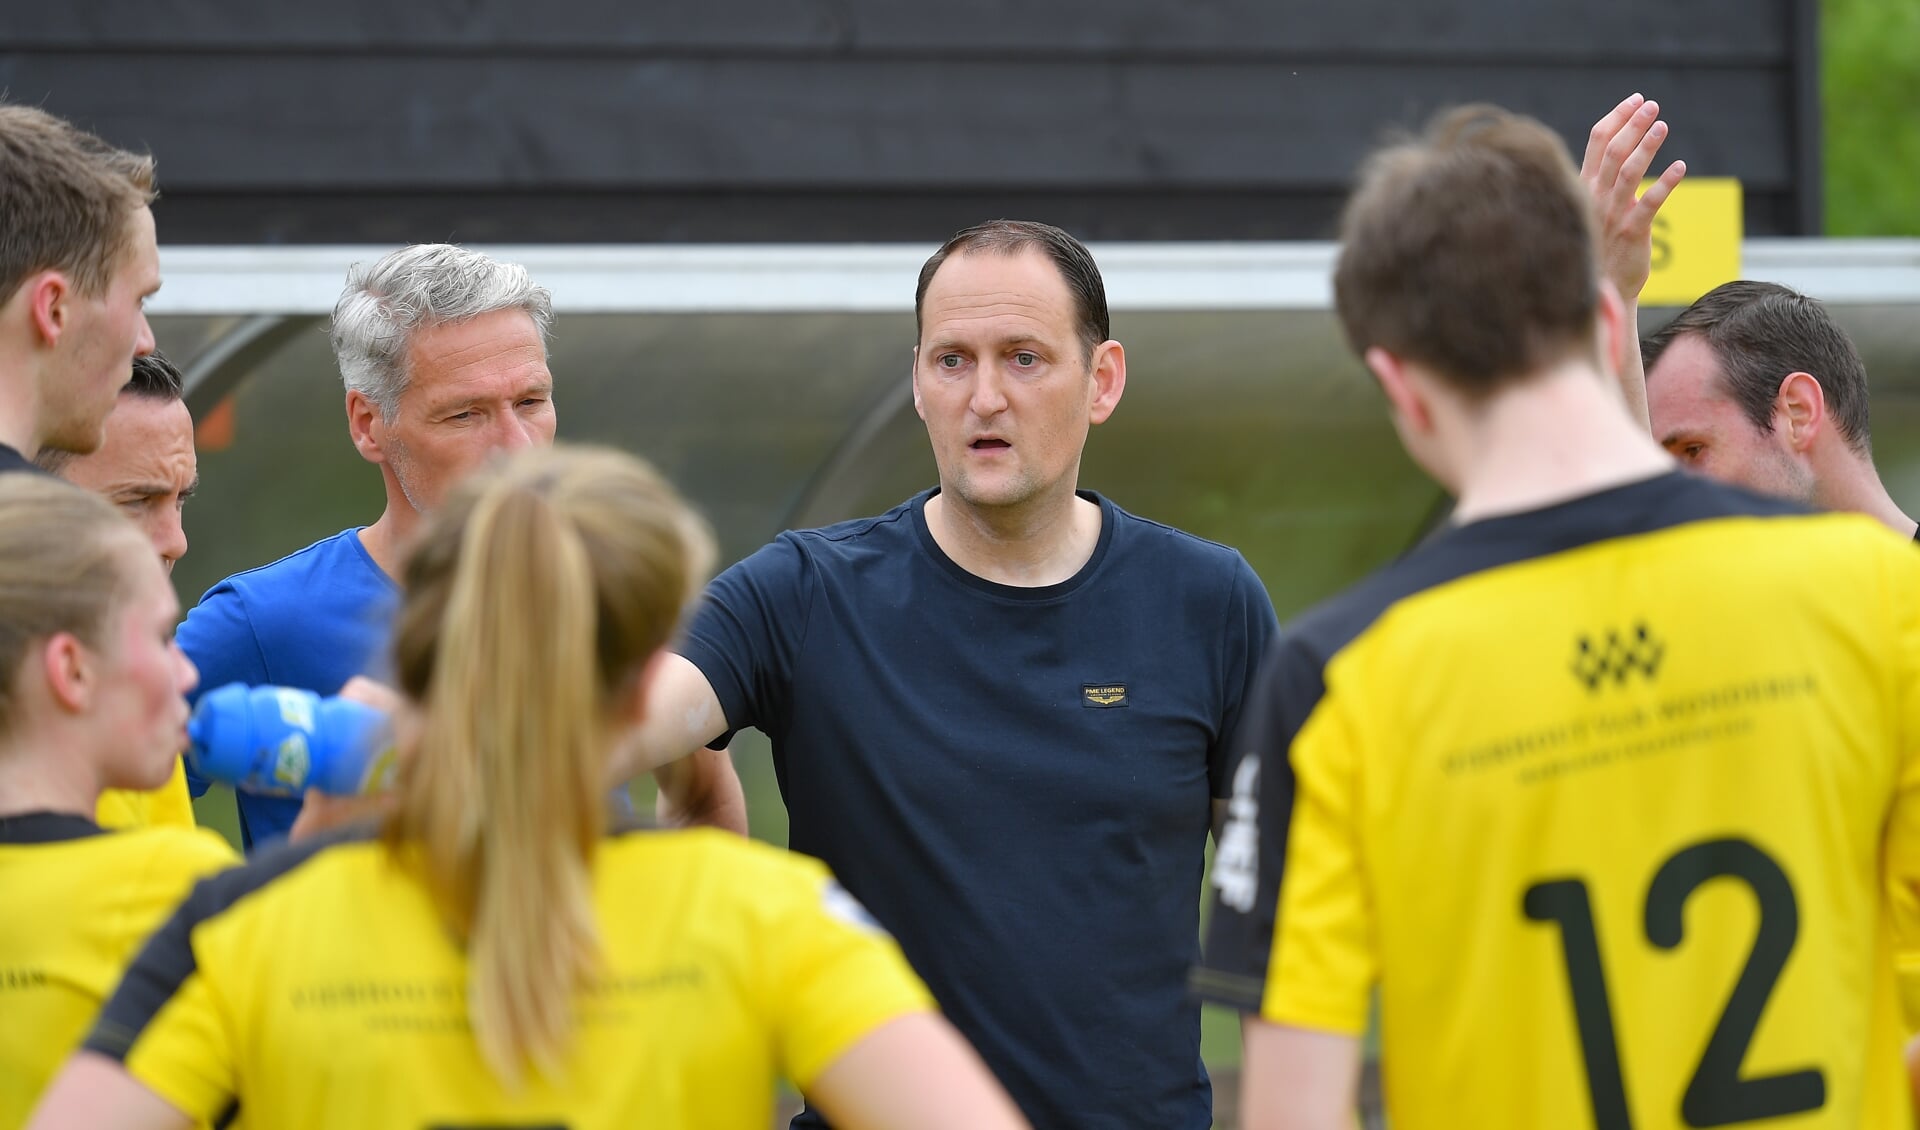 Dalto-coach Jesper Oele instrueert zijn spelers tijdens een time-out in het thuisduel met Nic, afgelopen zaterdag op sportpark De Woerd in Driebergen.